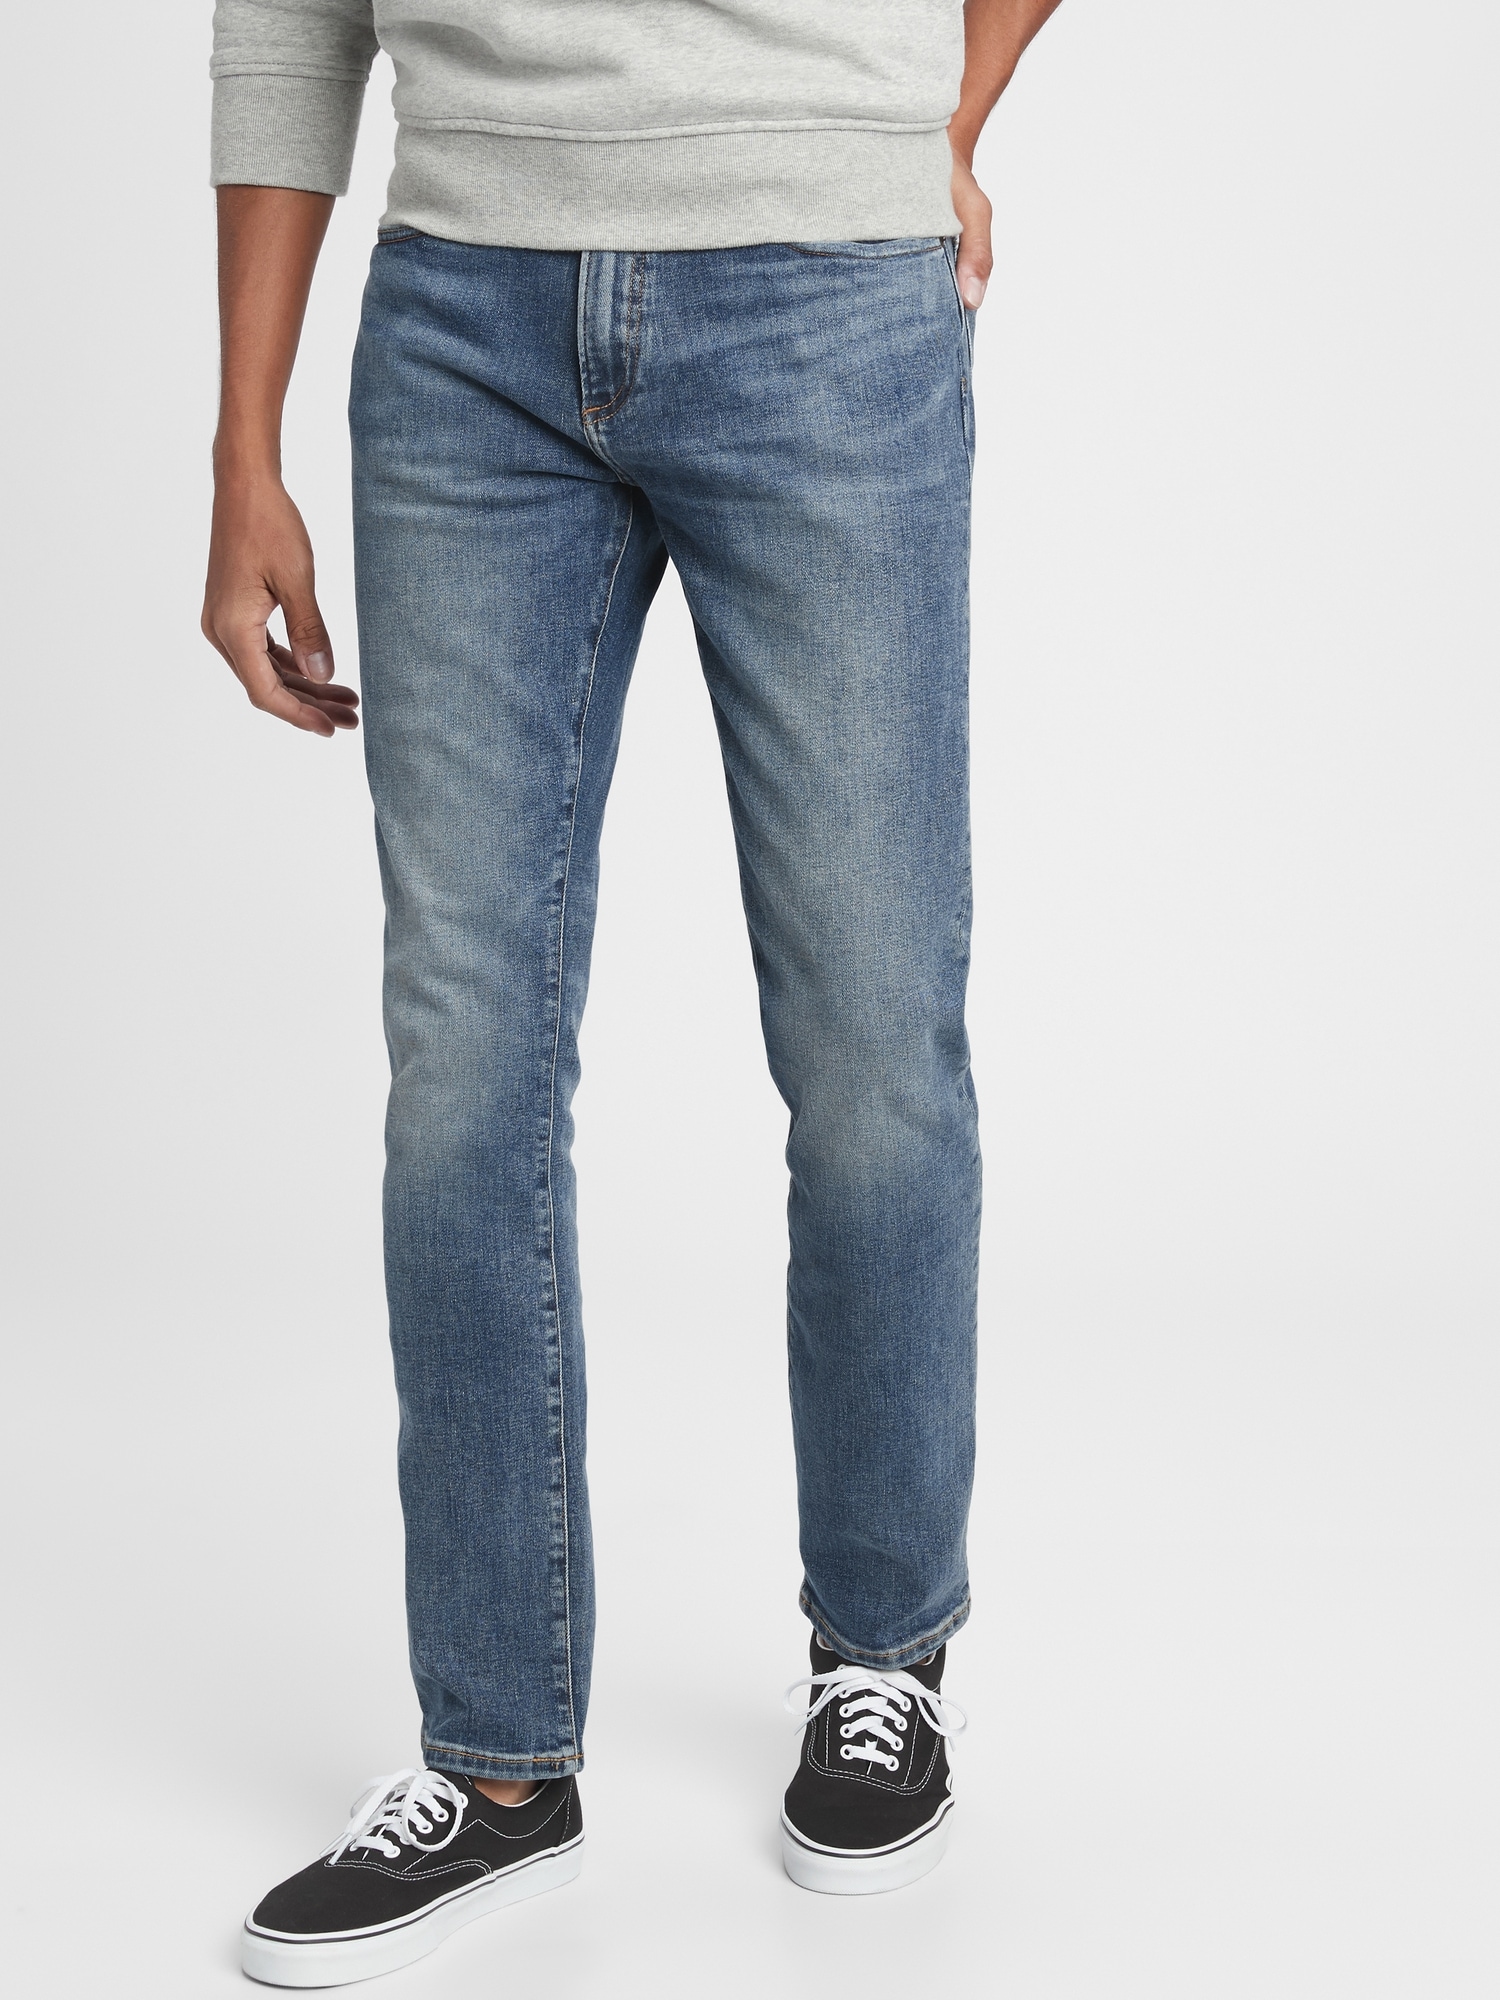 Skinny Jeans With Gapflex | Gap